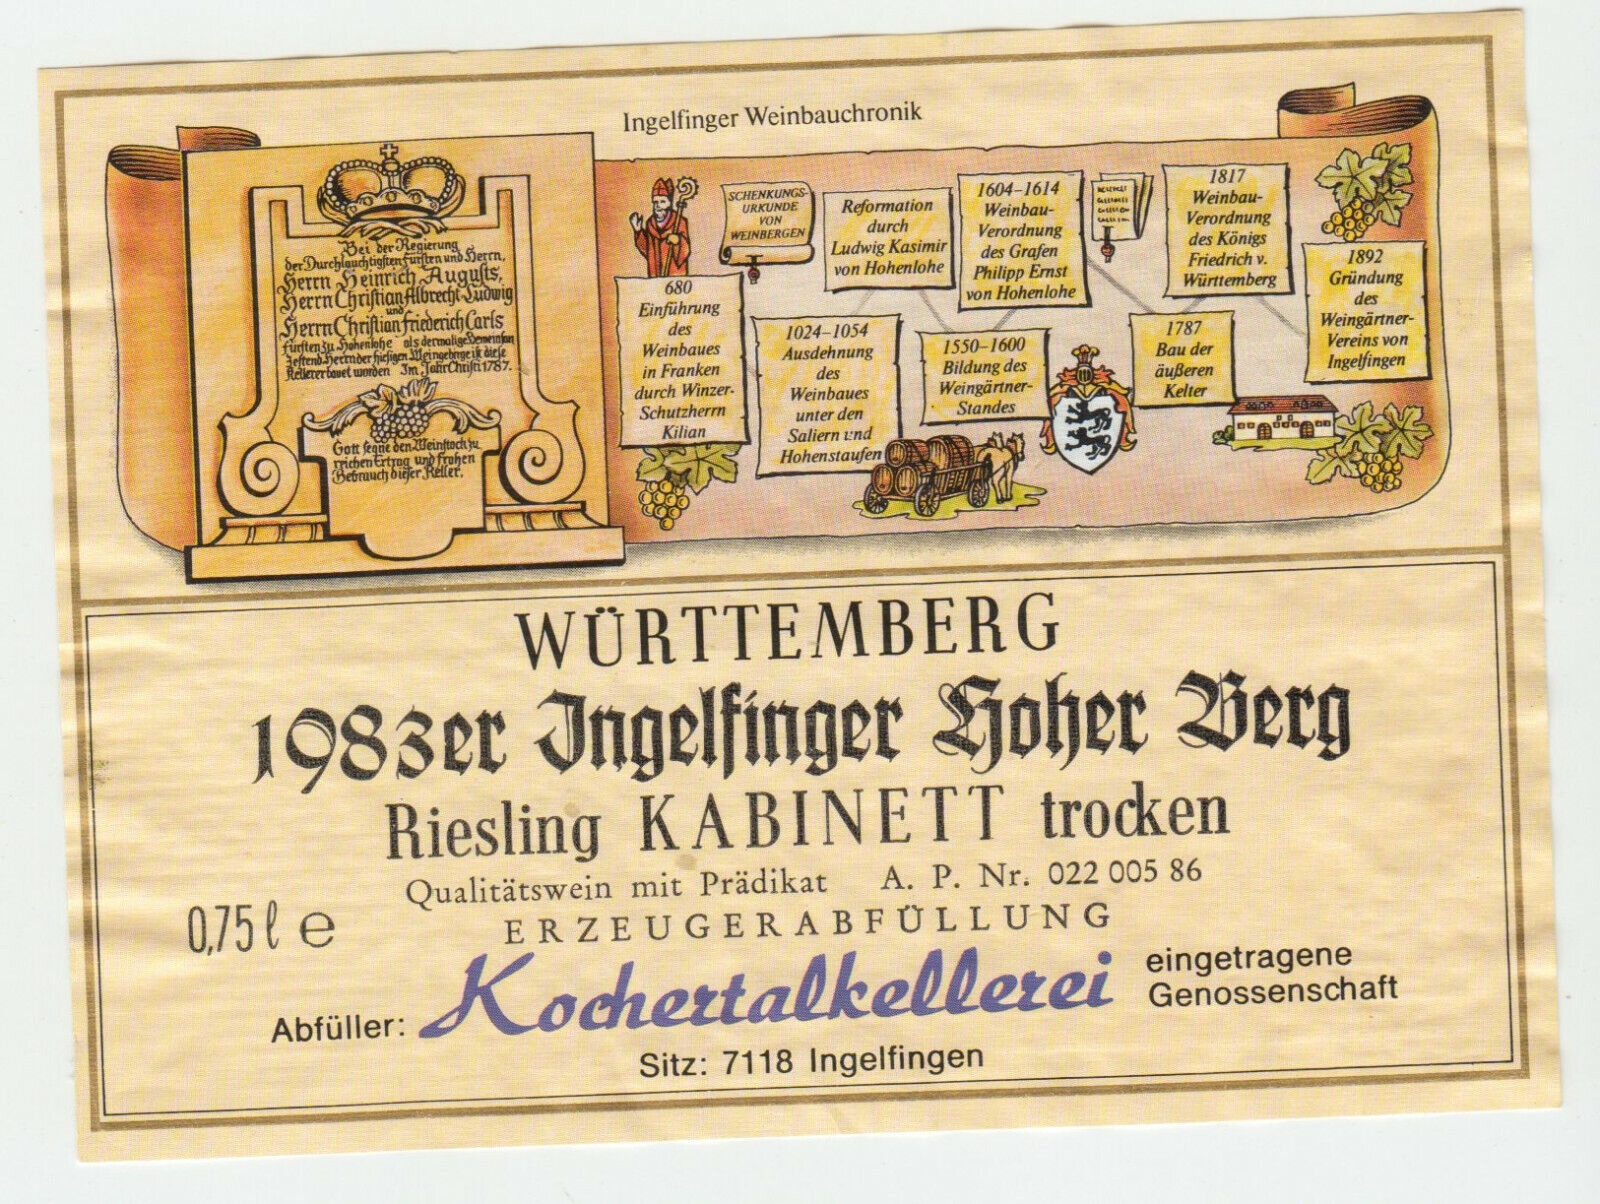 ETIQUETTE DE VIN 1983 WURTTEMBERG INGELFINGER HOHER BERG KOCHERTALKELLEREI 124438225765